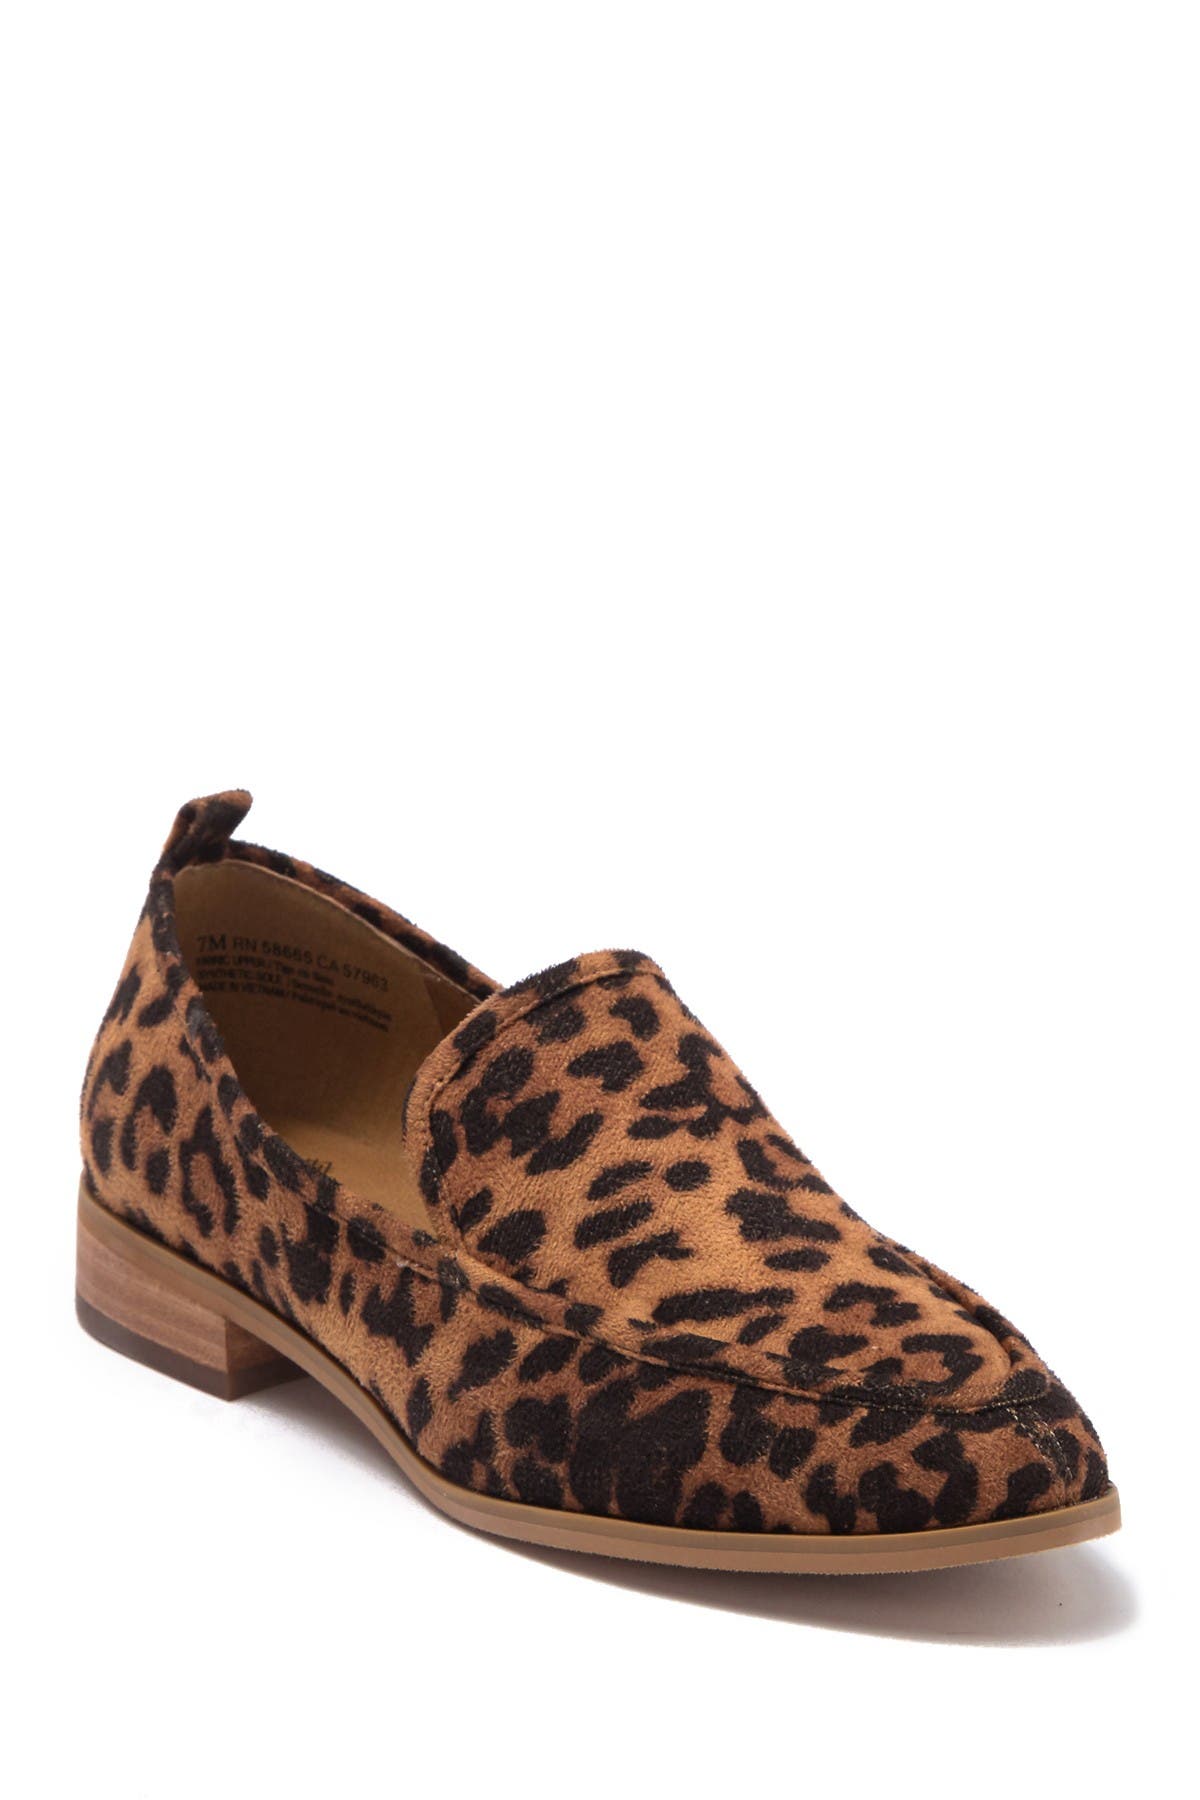 leopard shoes wide width